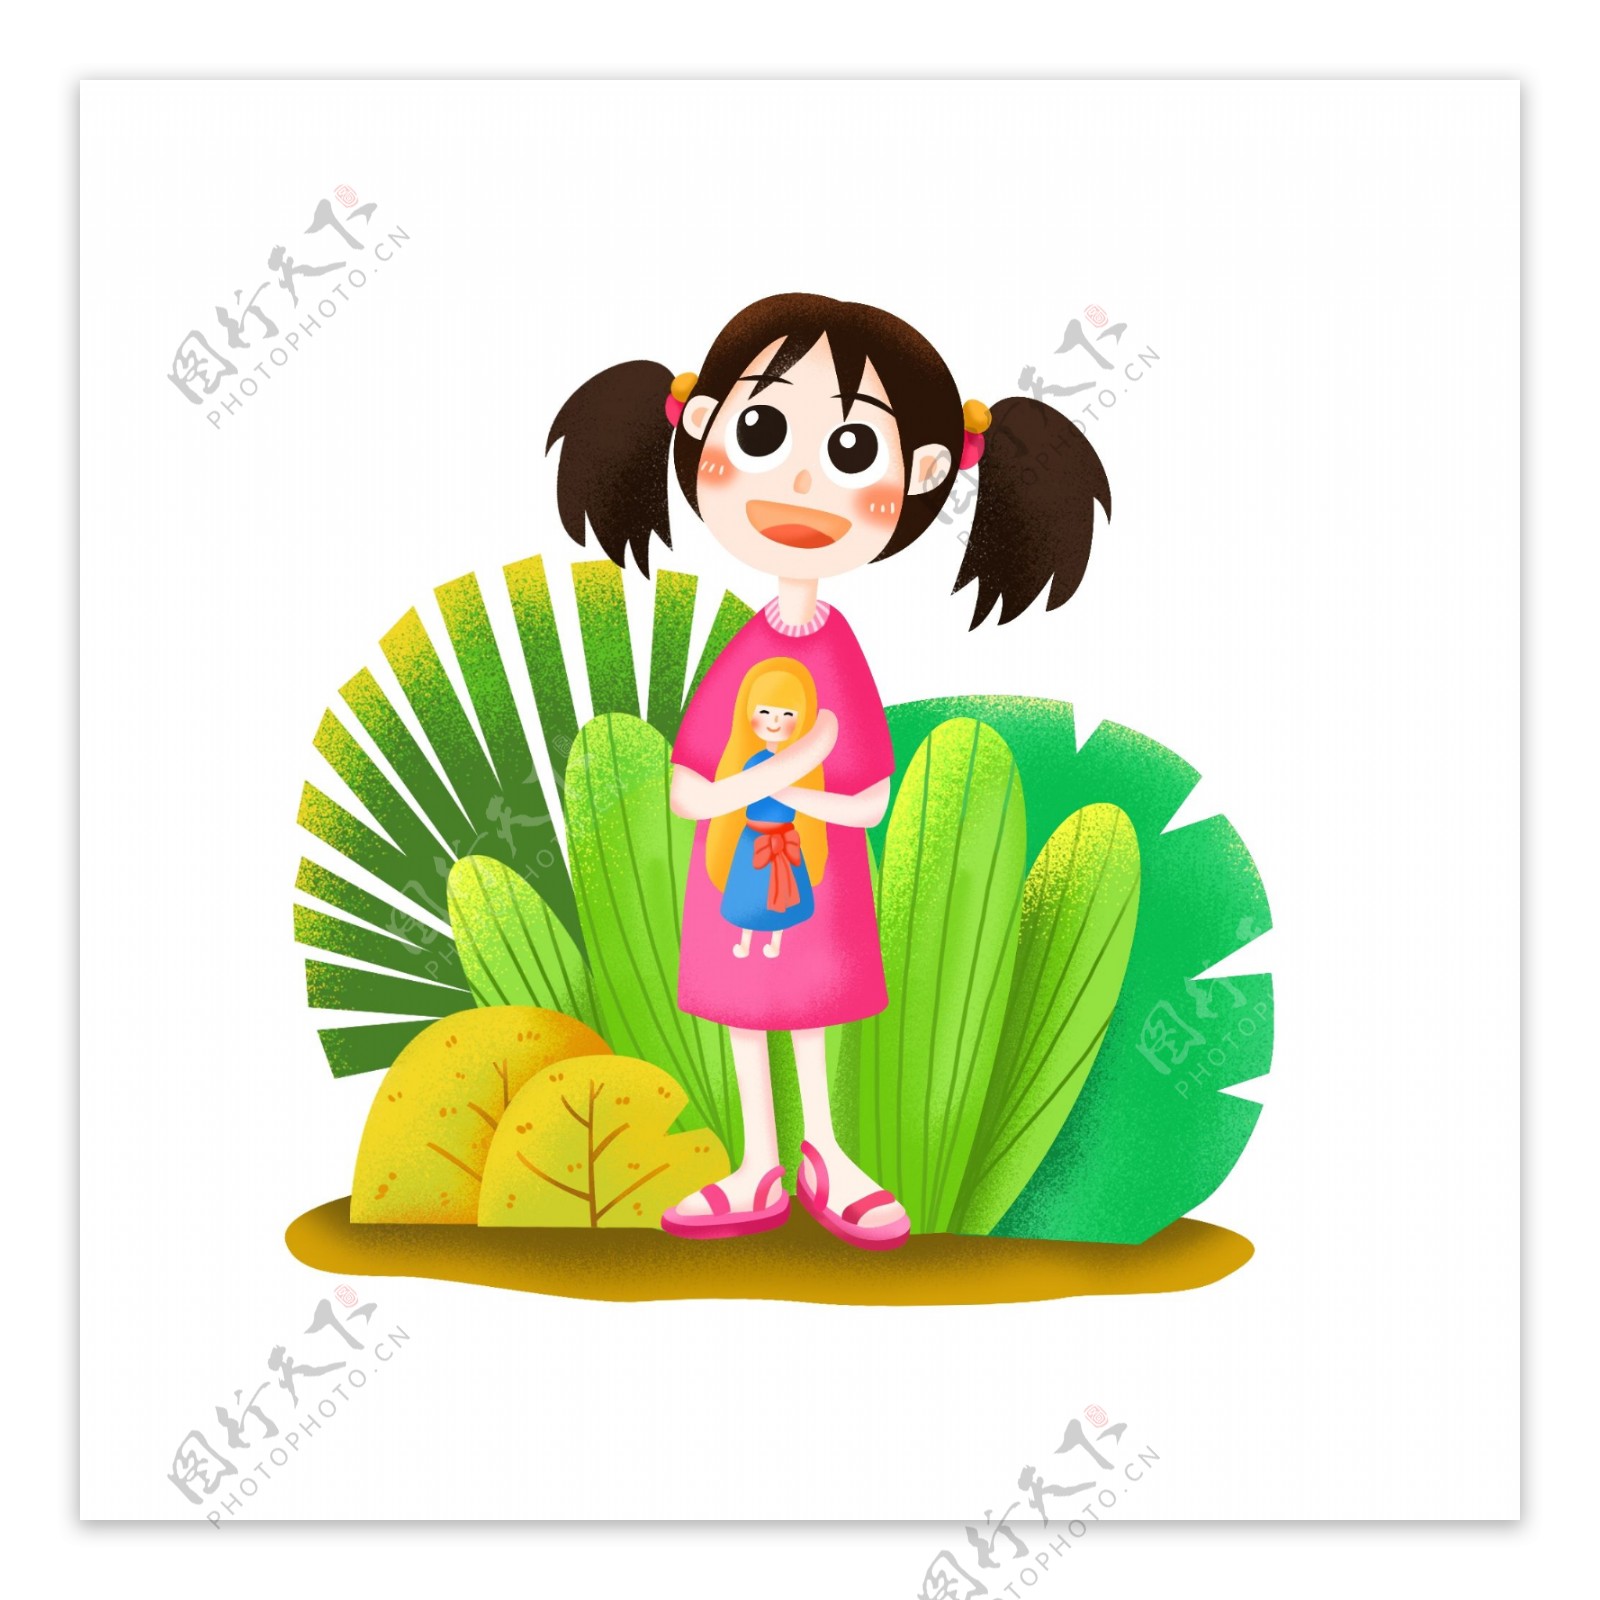 小女孩六一儿童节植物卡通可爱装饰元素